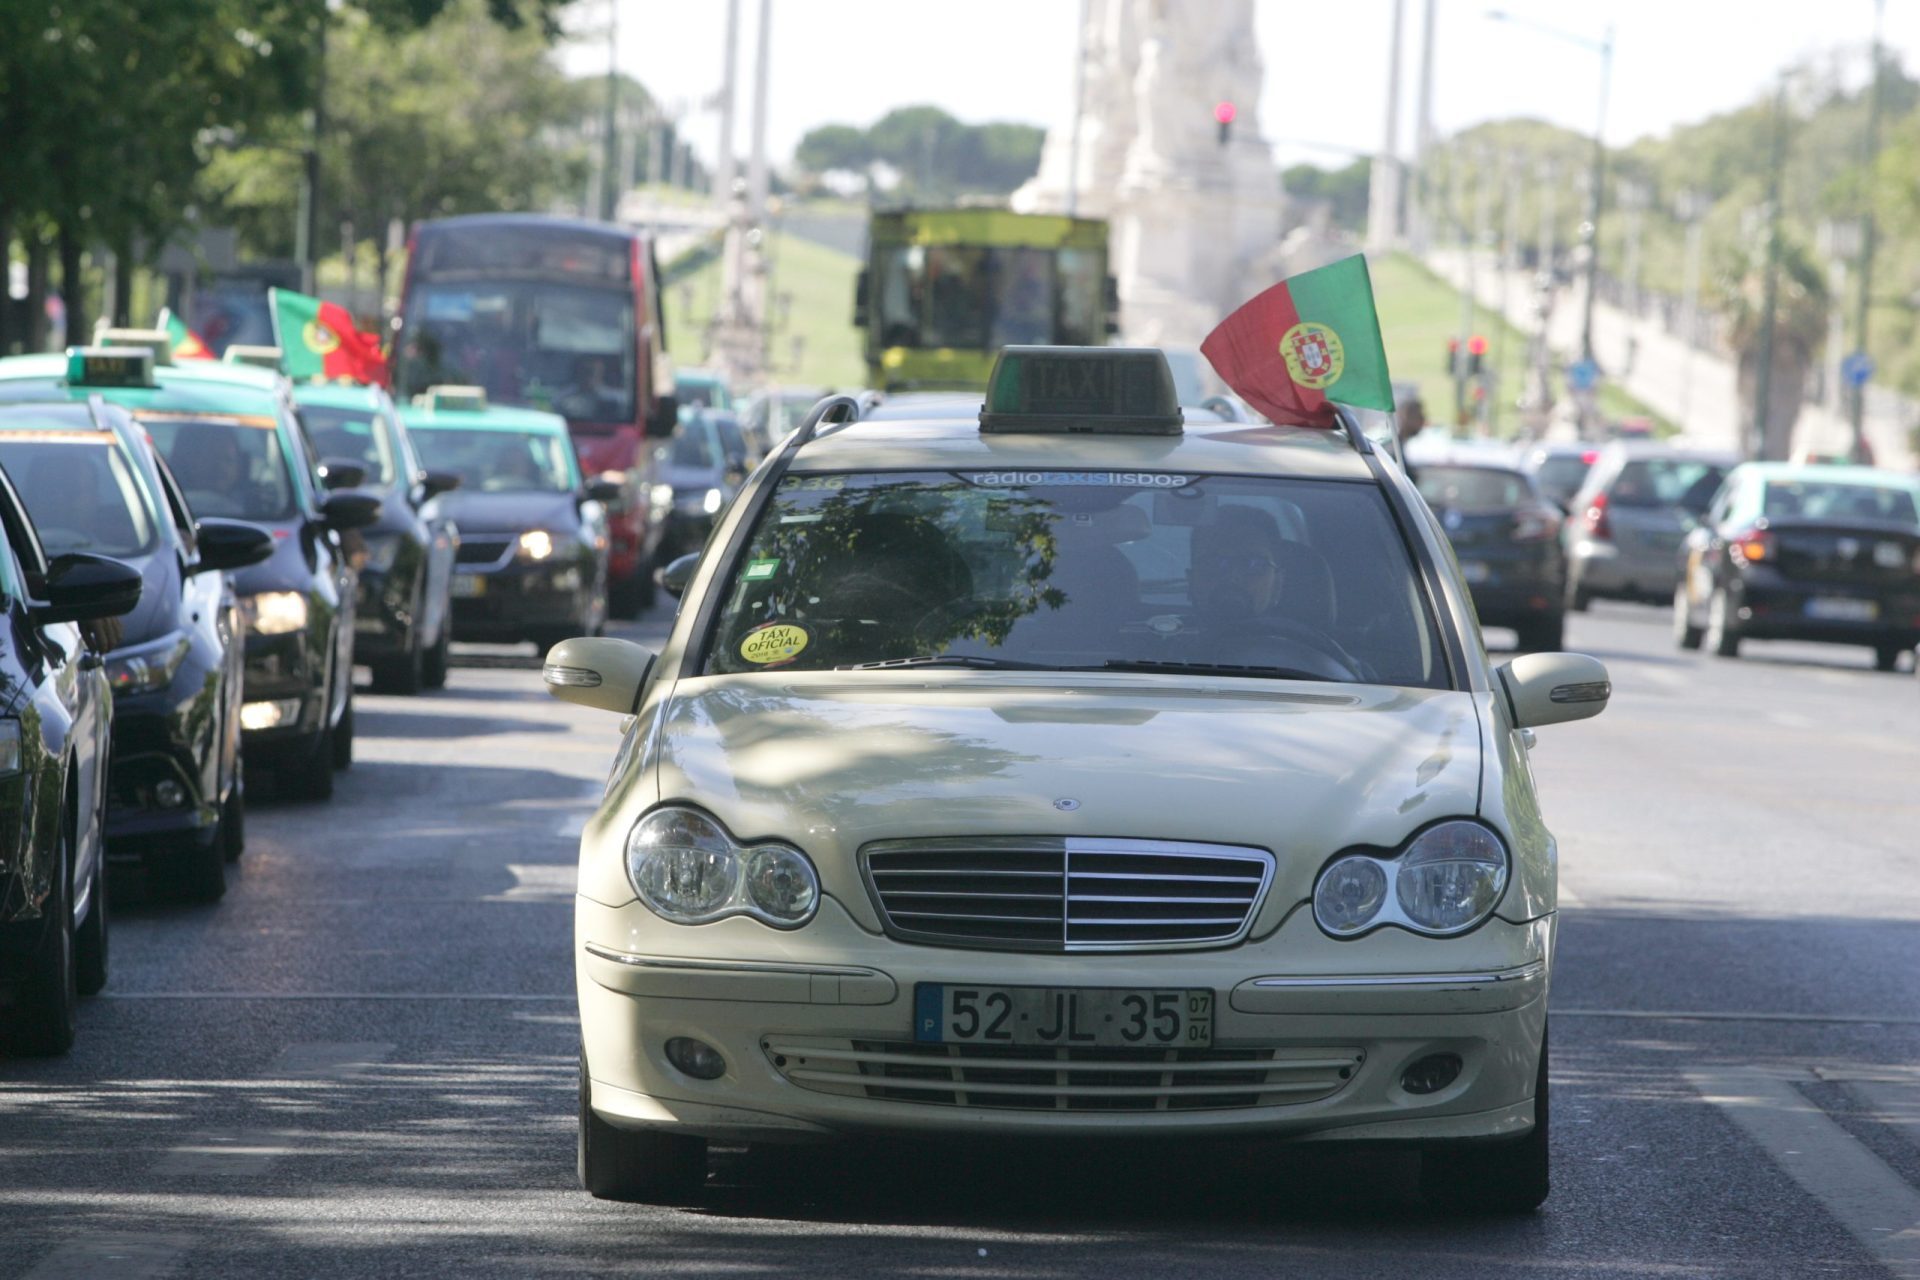 Taxista detido em Lisboa por cobrar 80 cêntimos a mais a cliente